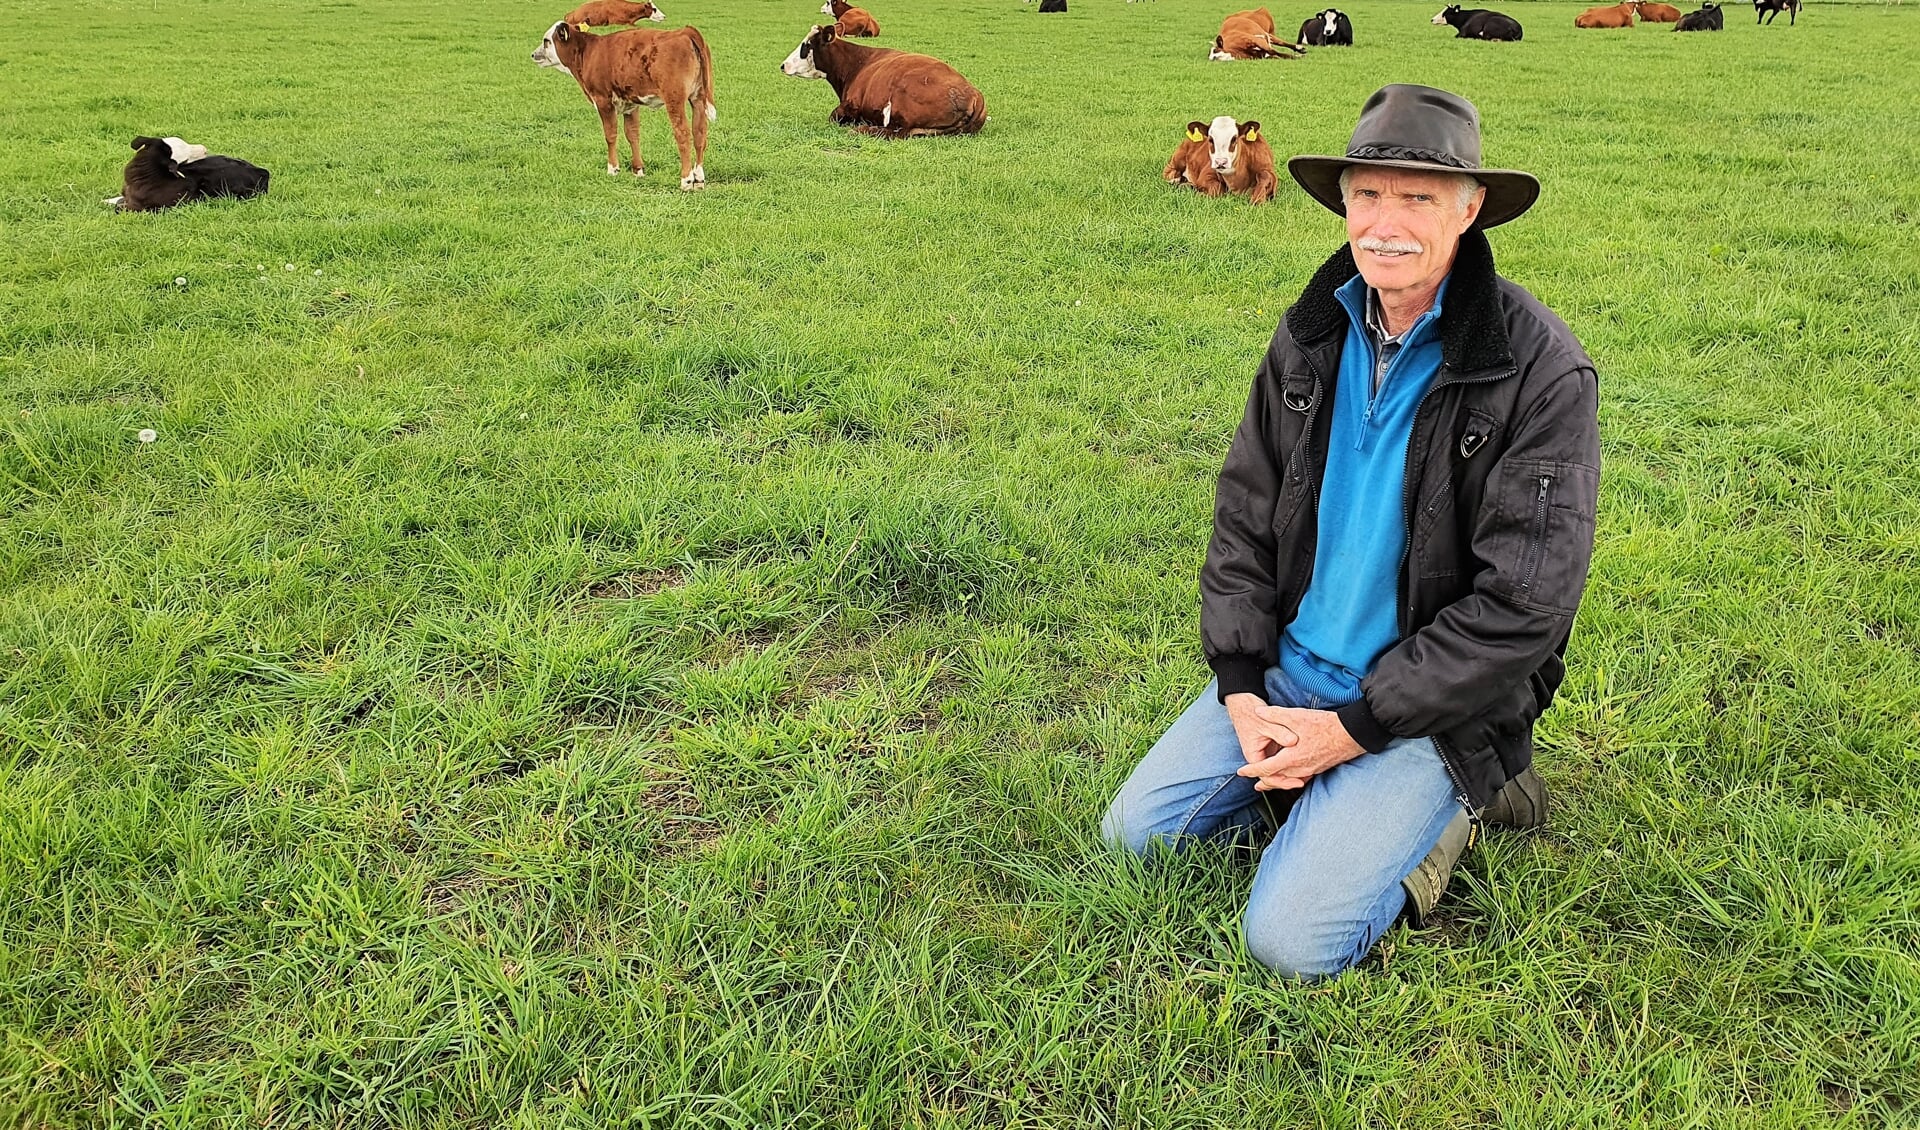 Oprichter van Veld & Beek, Jan Wieringa, in de wei, waar de kalfjes 'gewoon' tussen de koeien lopen.